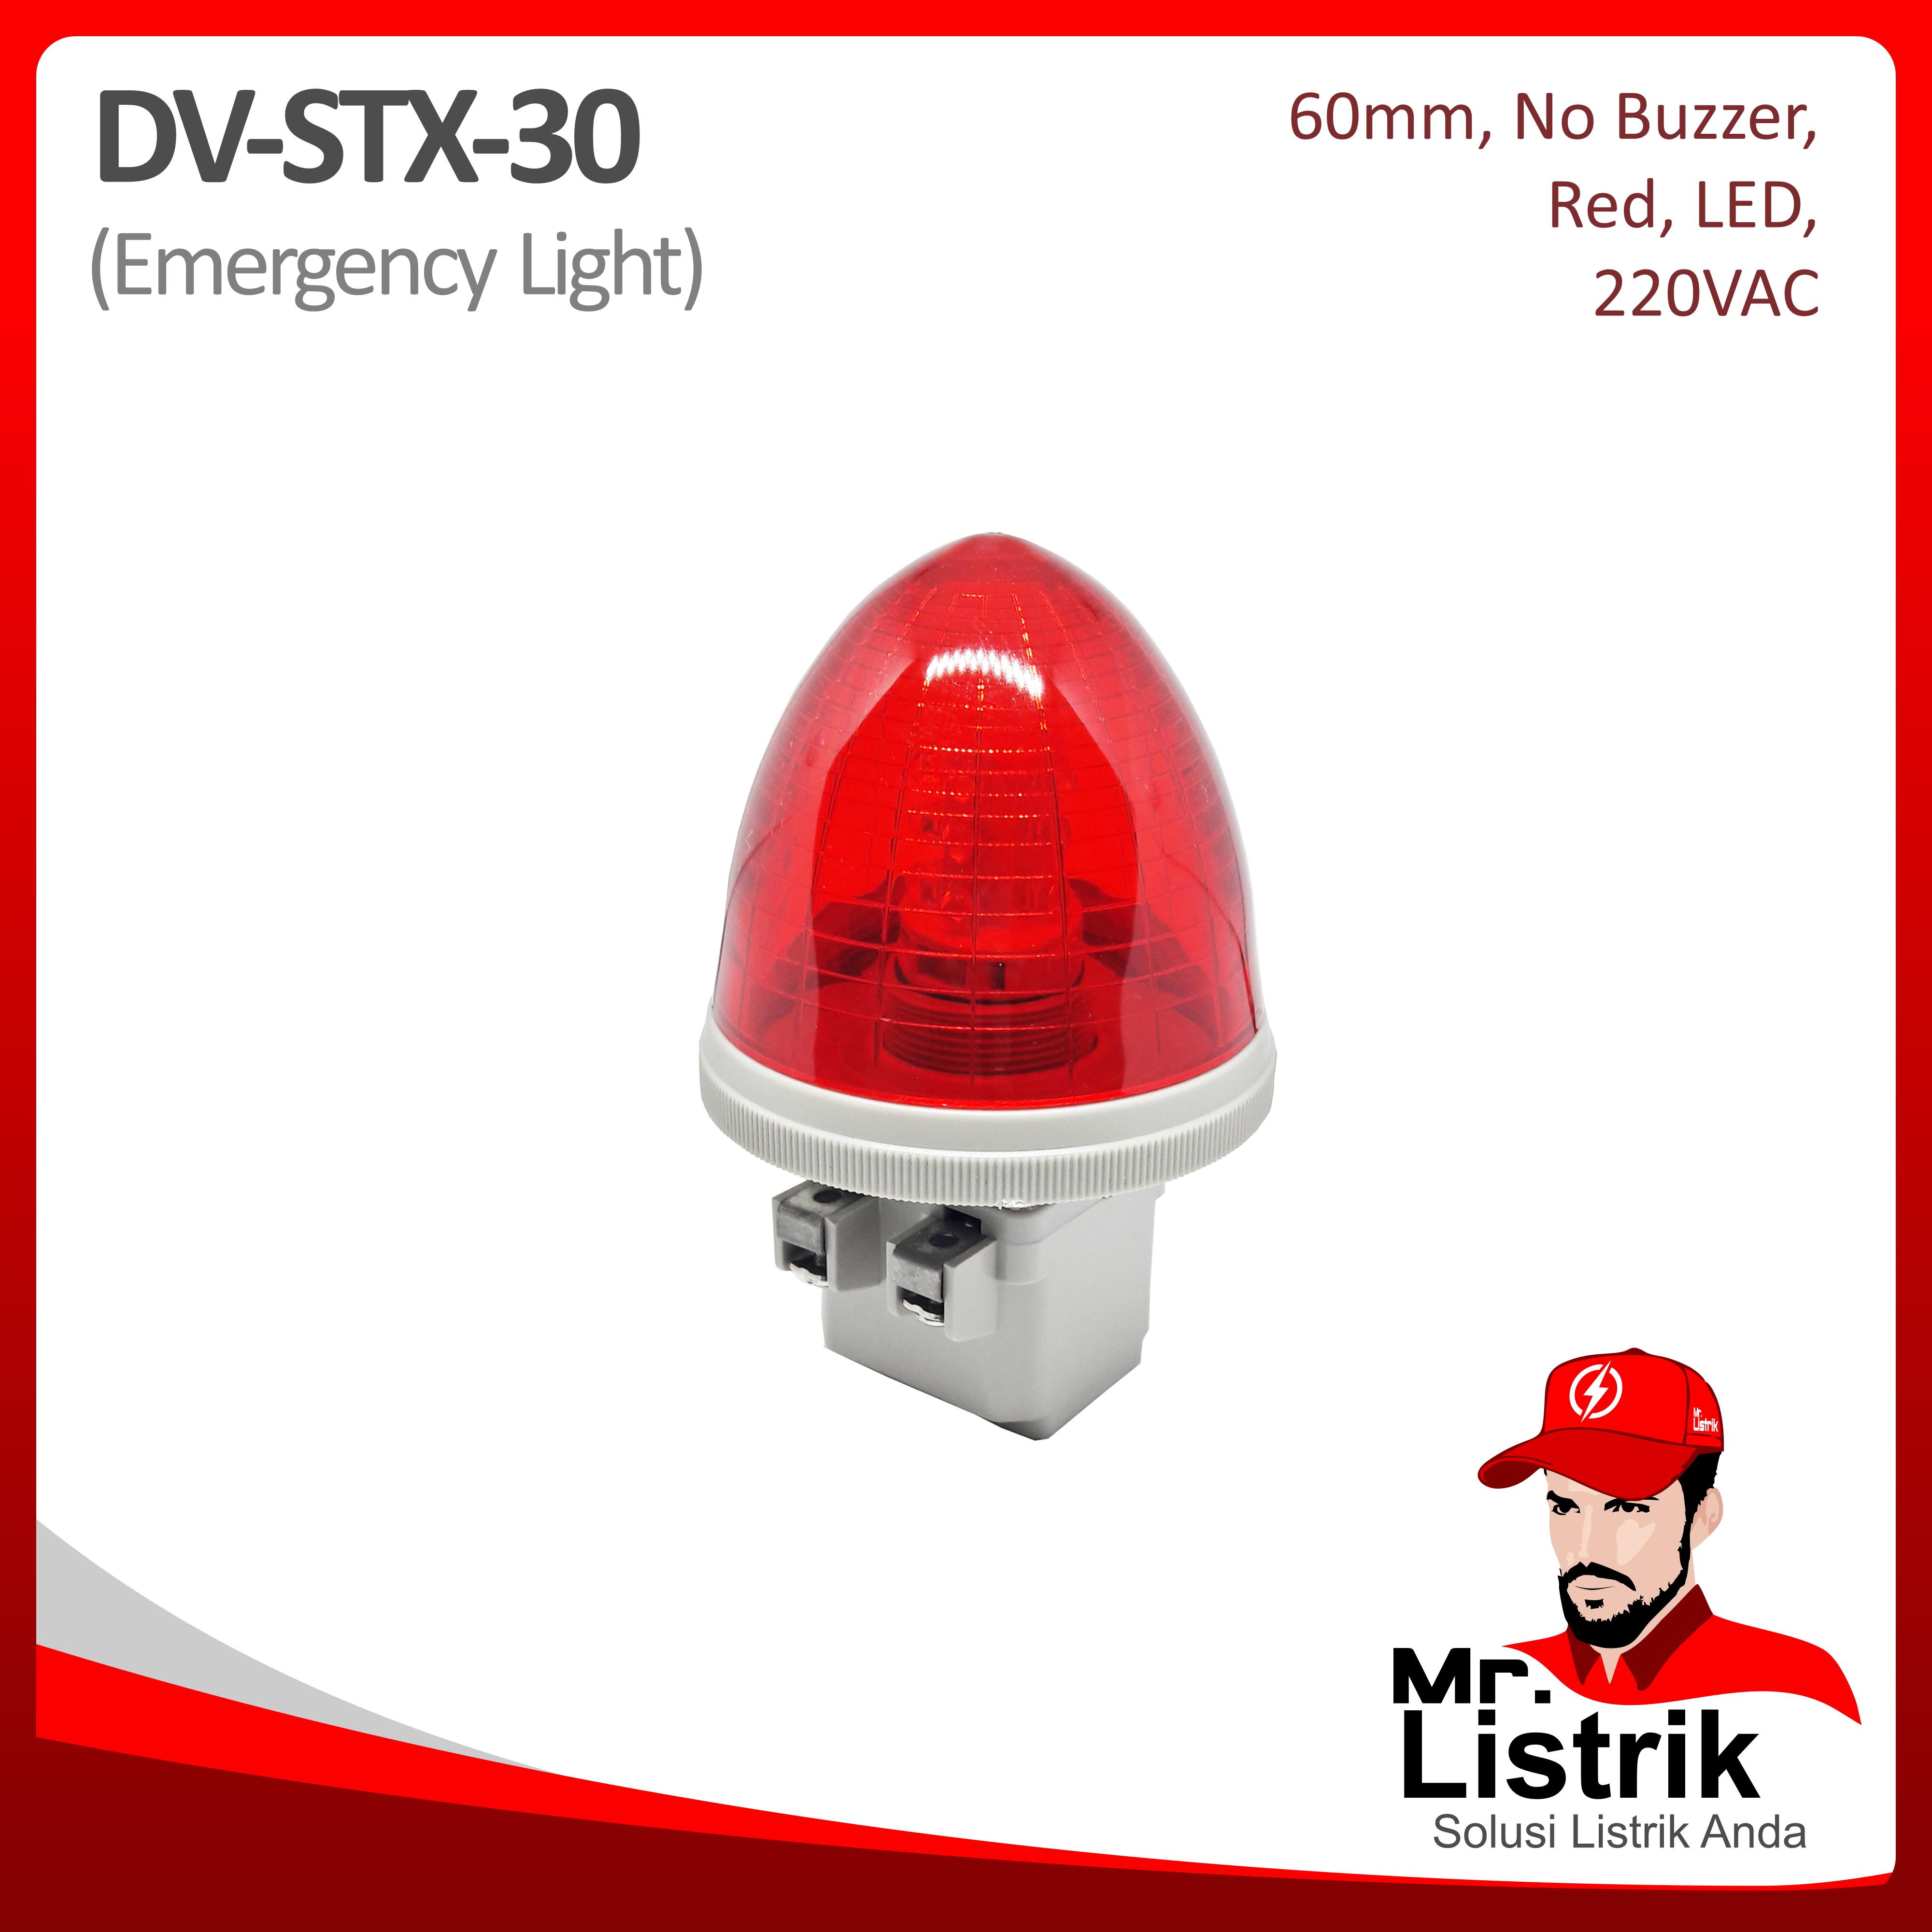 Emergency Light LED 60mm 220VAC DV STX-30